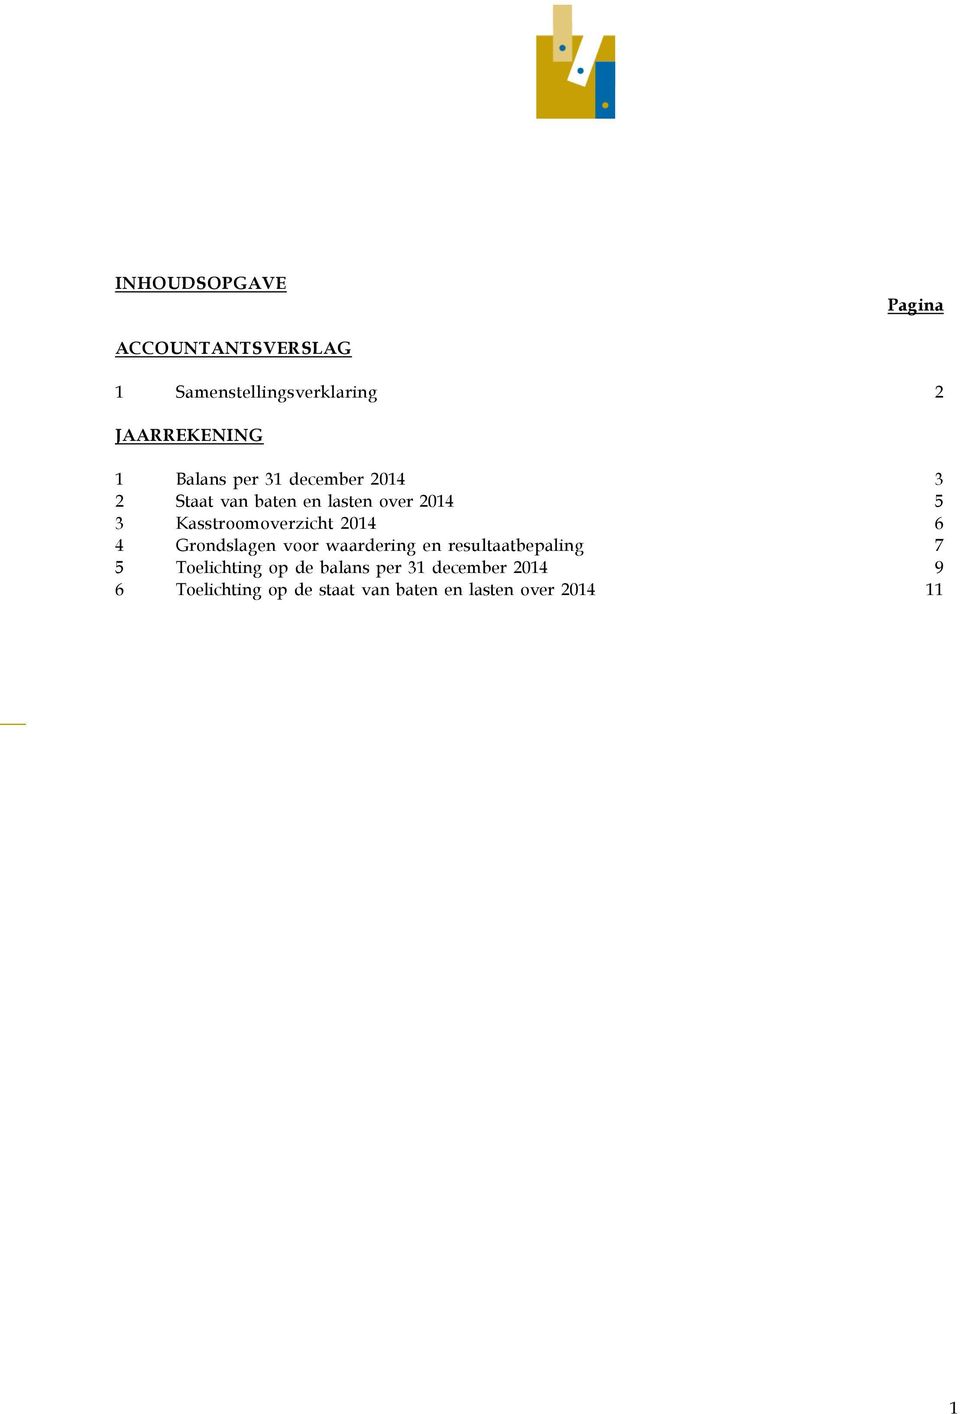 Kasstroomoverzicht 2014 6 4 Grondslagen voor waardering en resultaatbepaling 7 5